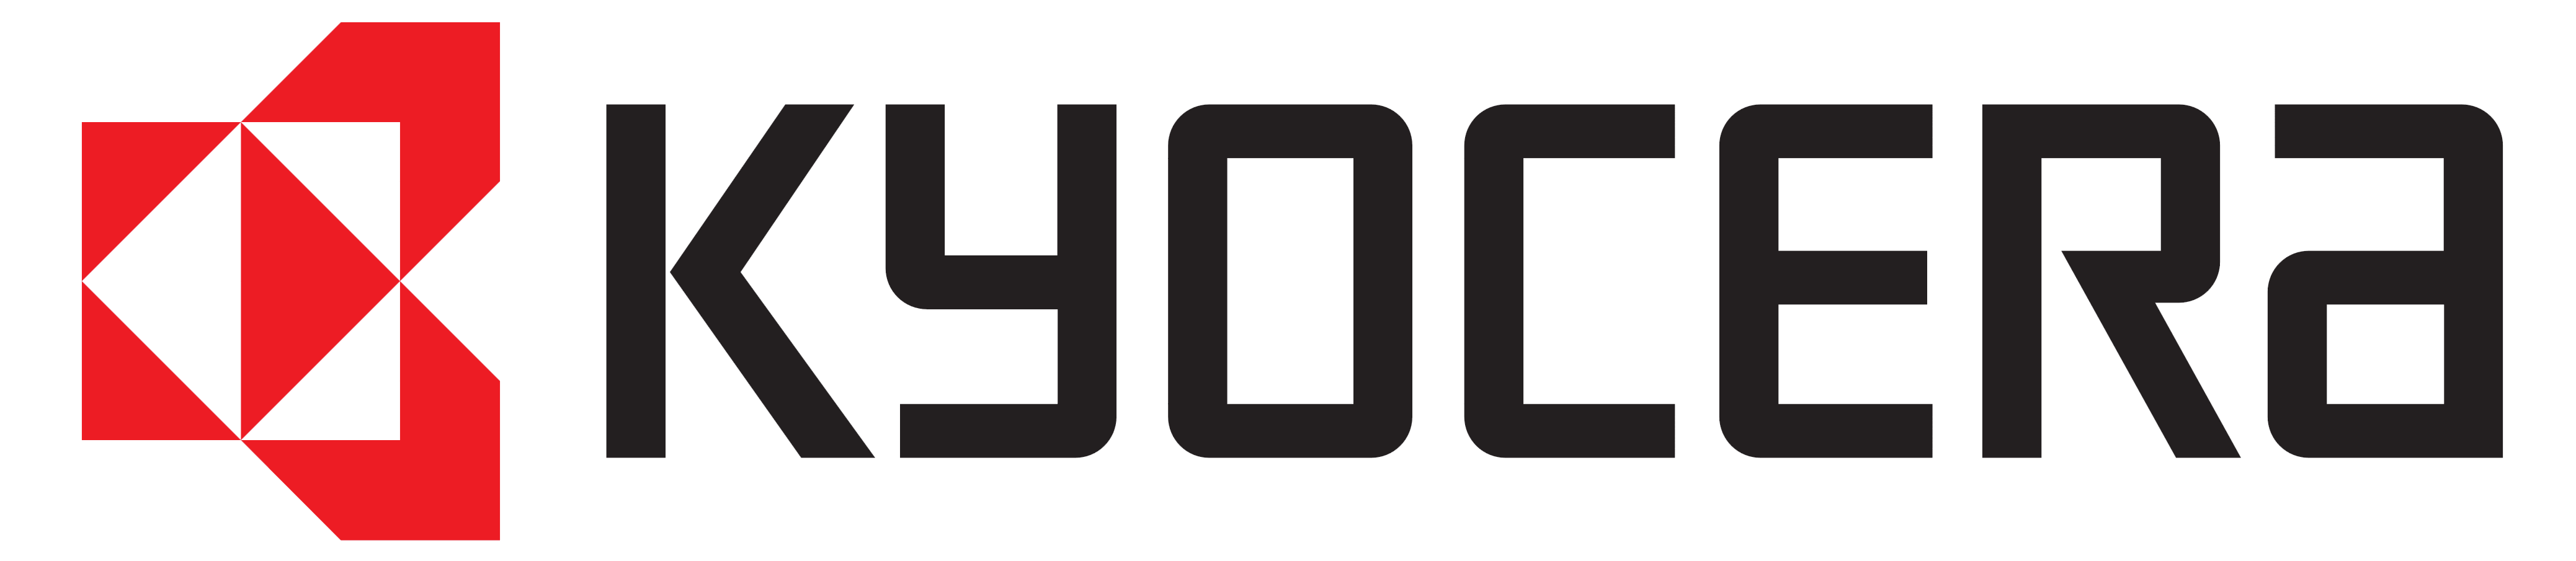 Kyocera logo, logotype